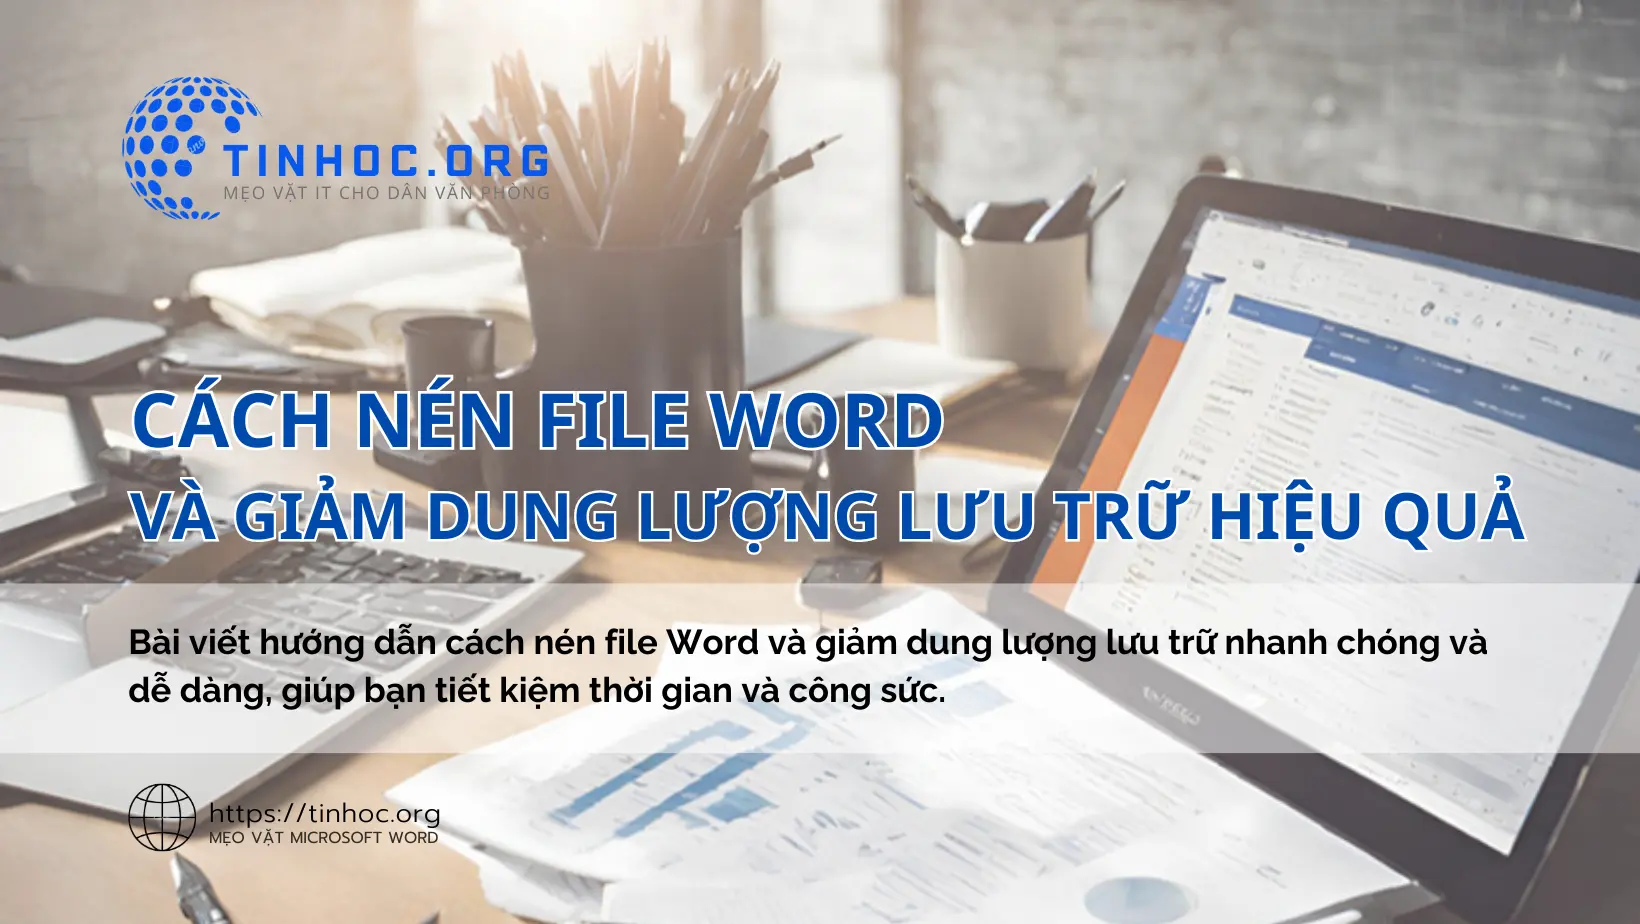 Bài viết hướng dẫn cách nén file Word và giảm dung lượng lưu trữ nhanh chóng và dễ dàng, giúp bạn tiết kiệm thời gian và công sức.